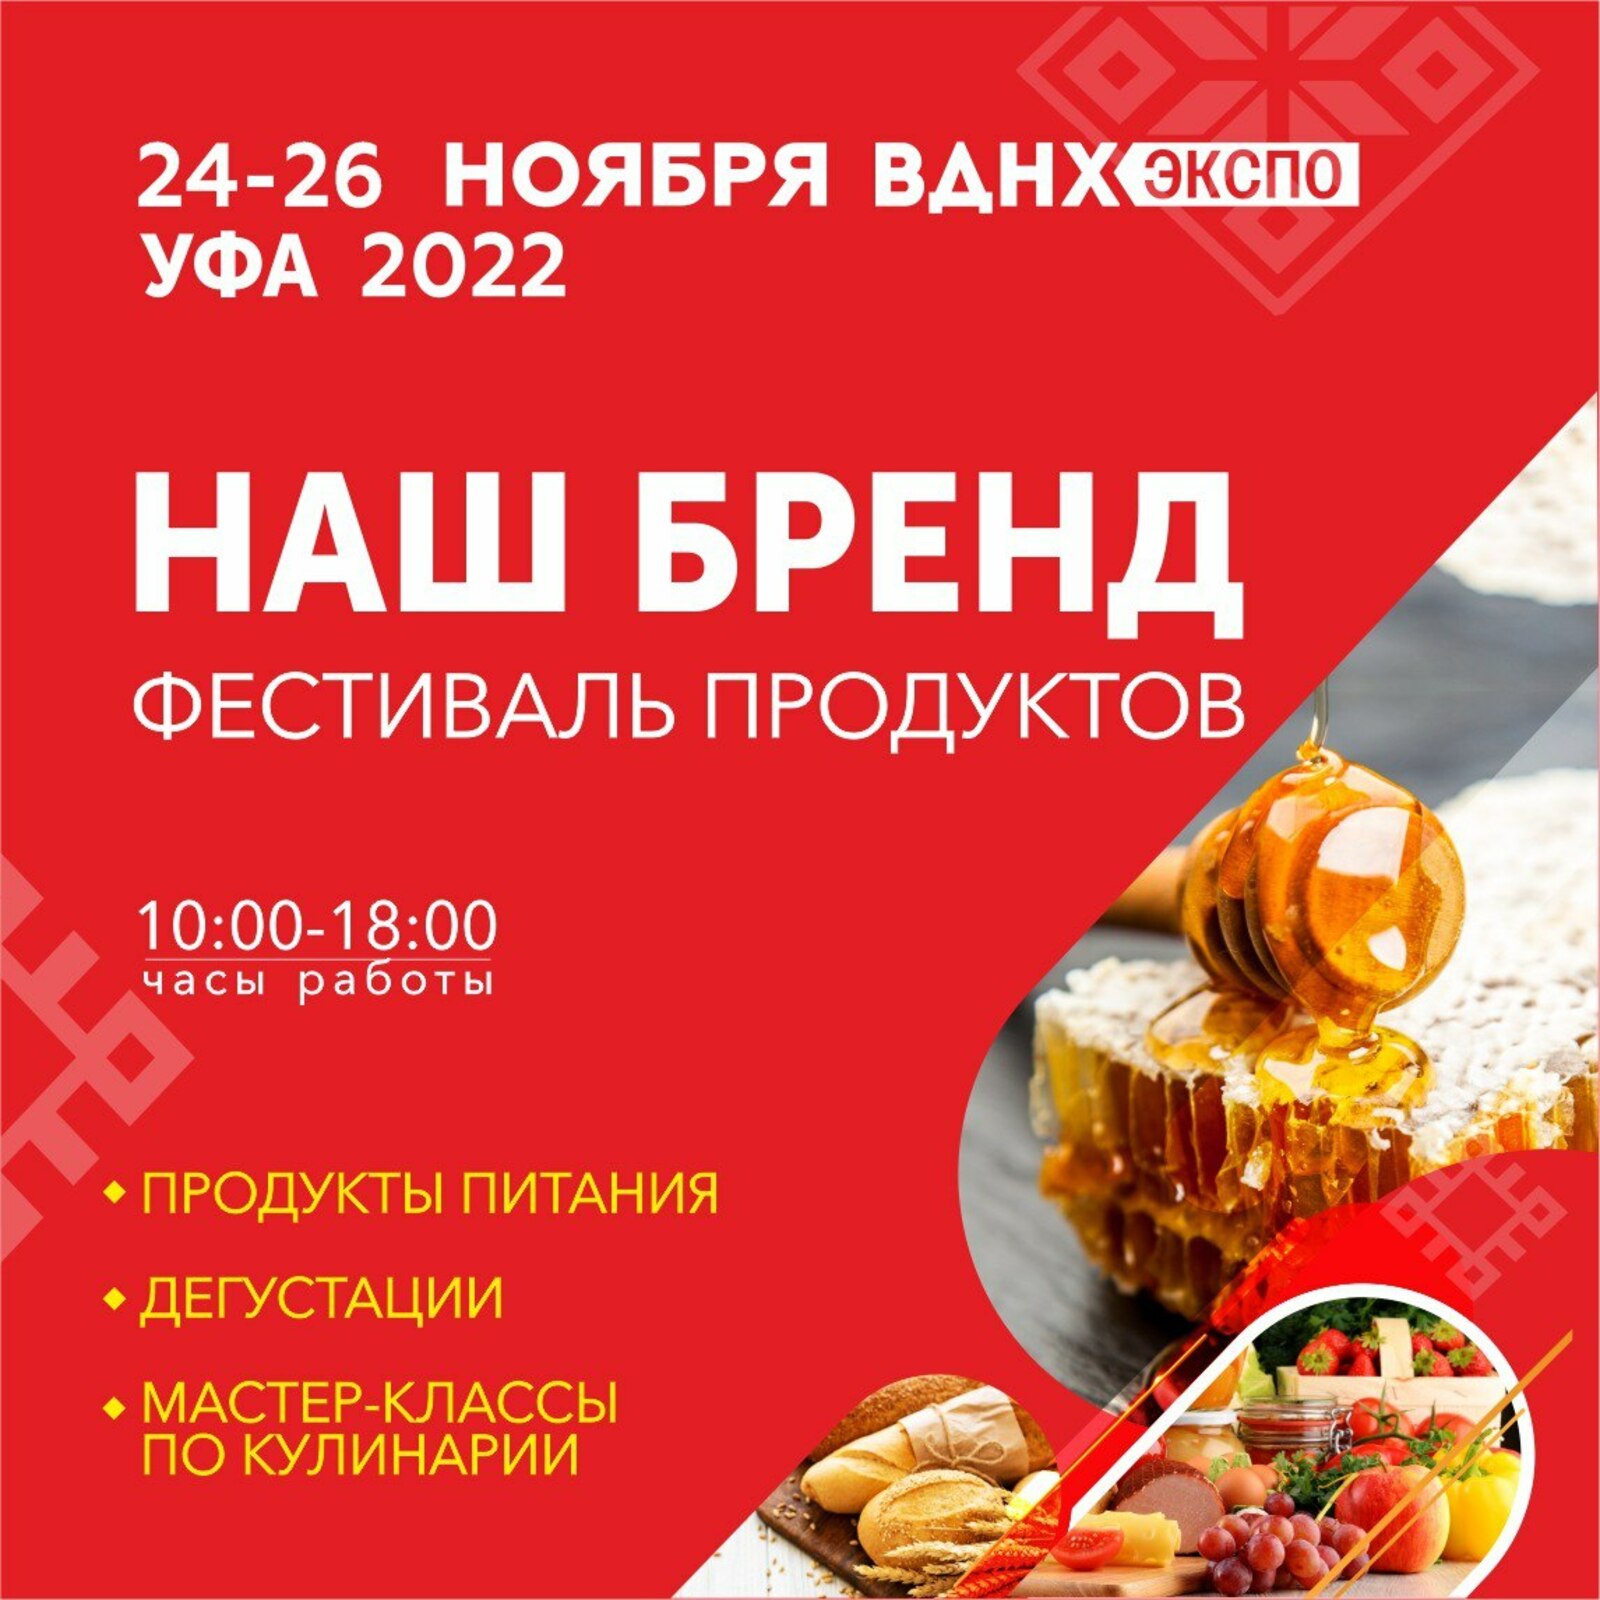 В Башкортостане состоится VI специализированная выставка «Наш Бренд»